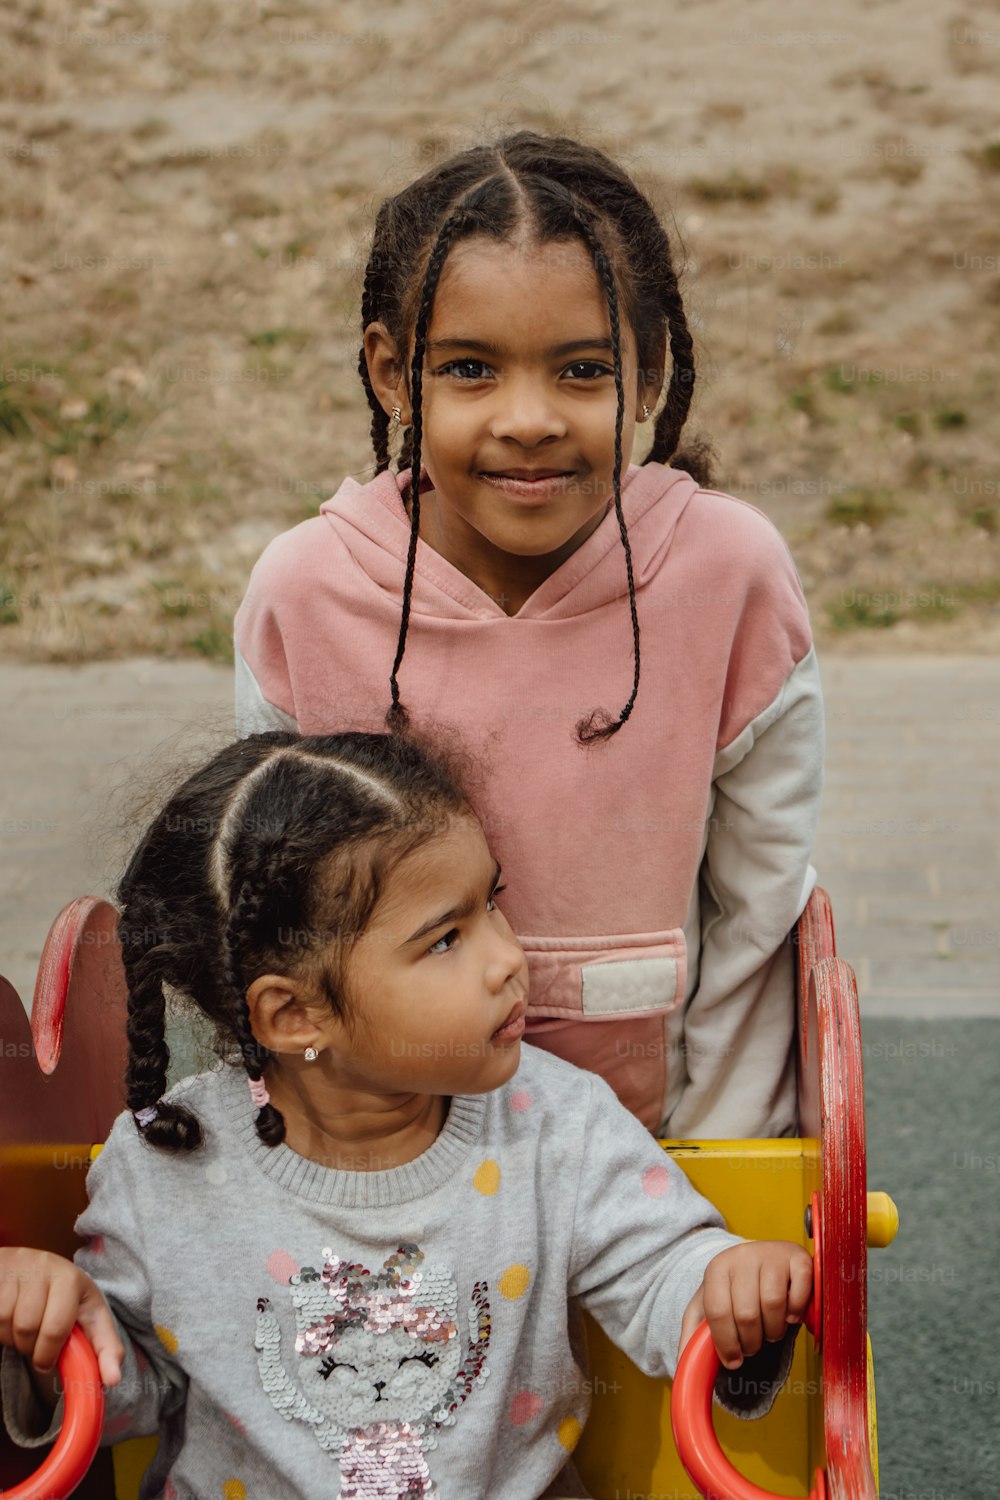 장난감 자동차에 앉아 있는 두 어린 소녀